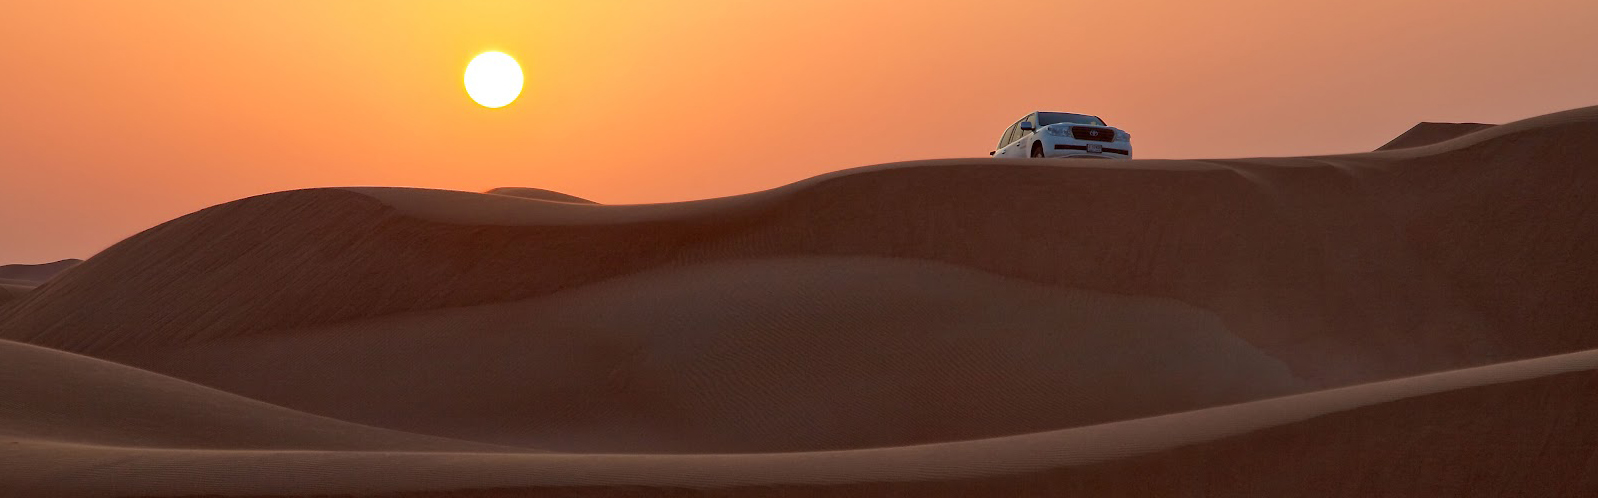 Dubai - výlety - desert safari